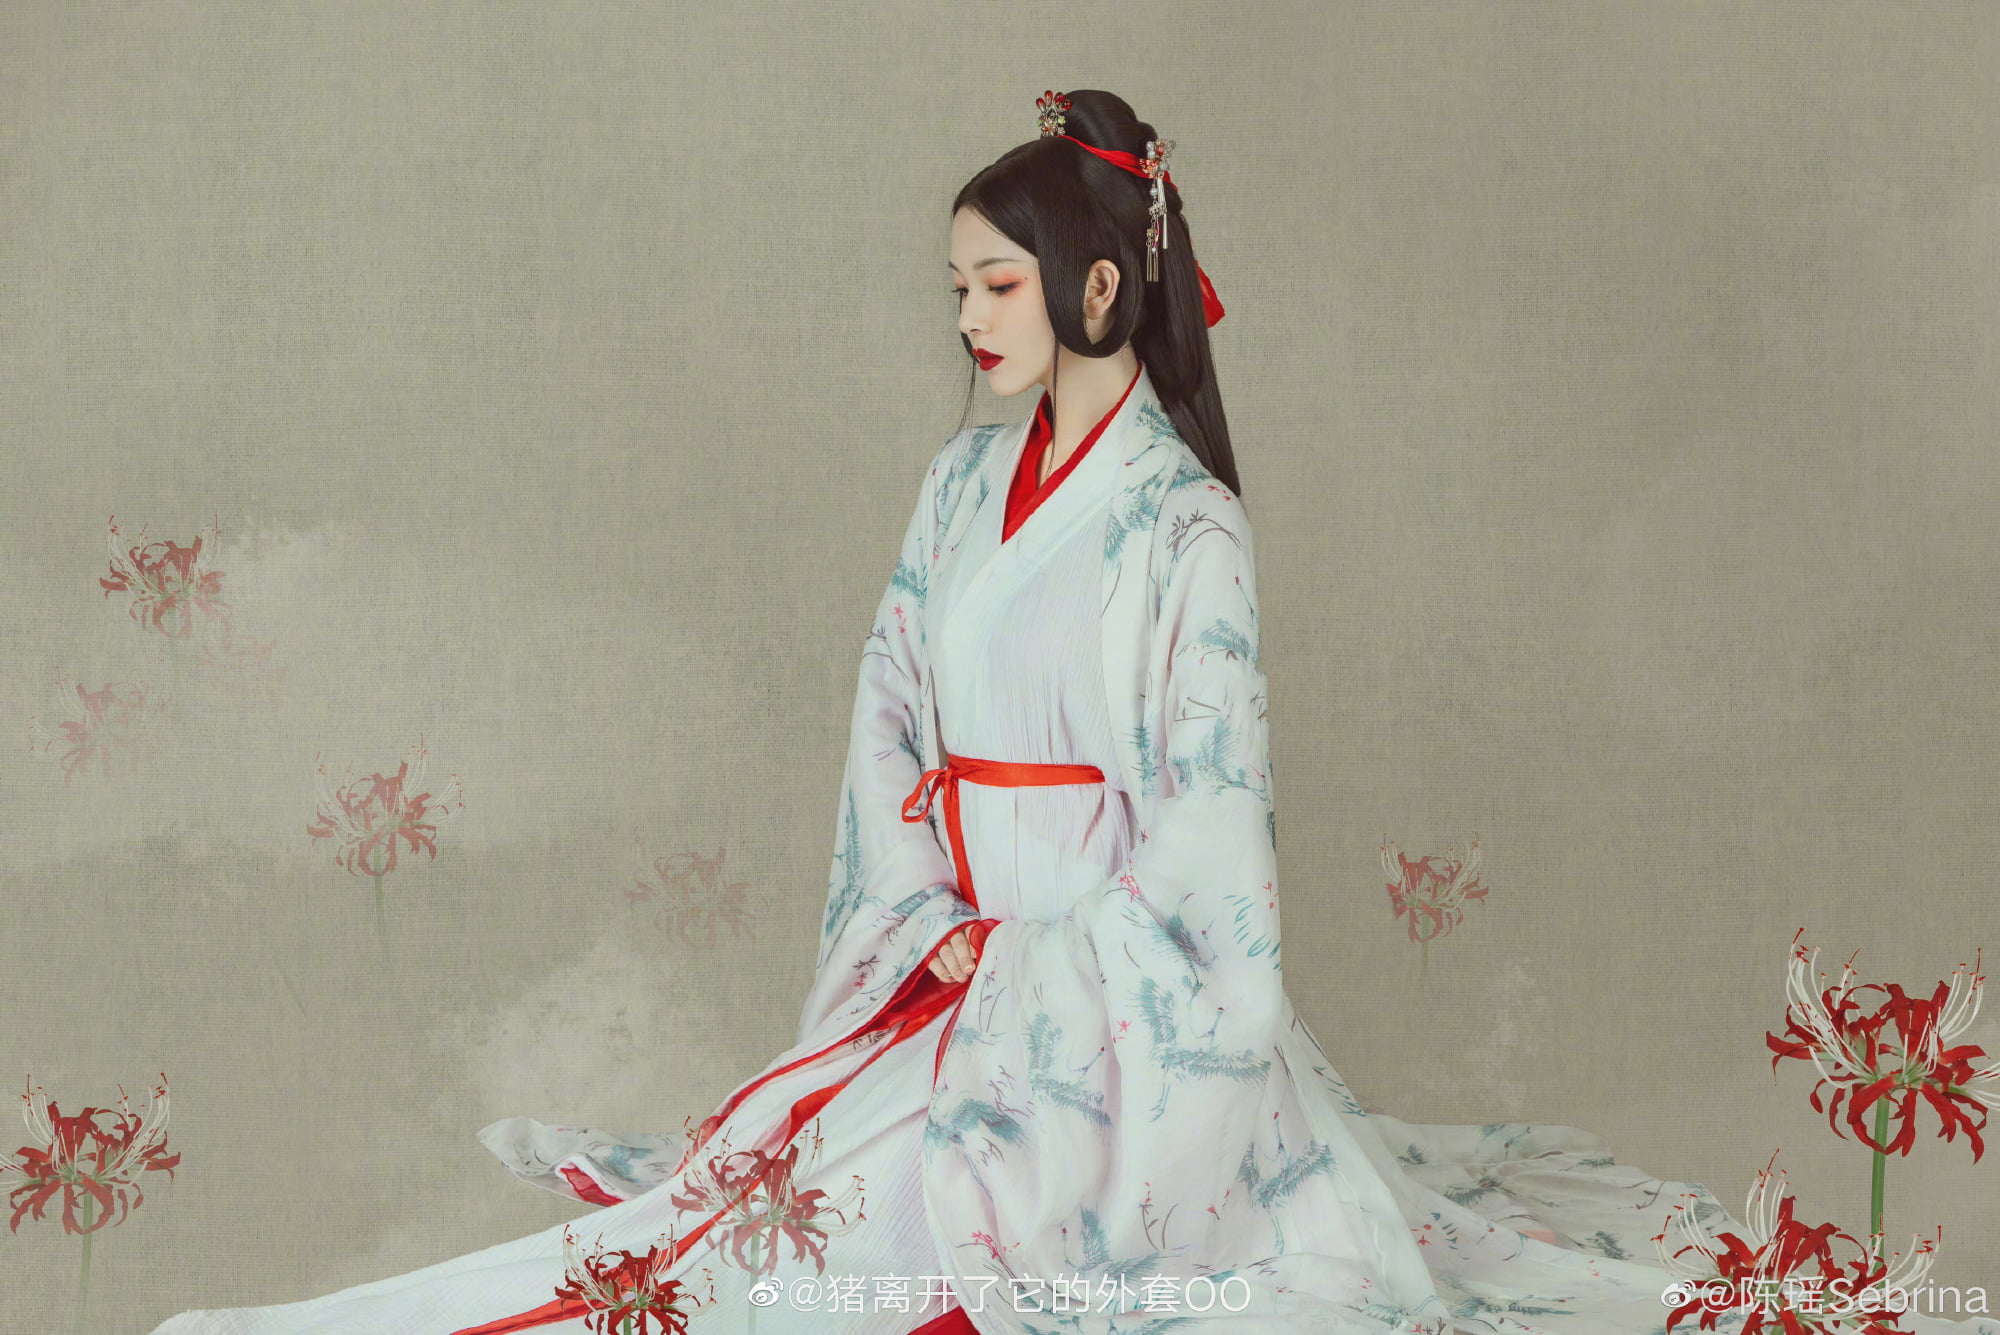 Nữ phụ đam mỹ 'Hạo Y Hành' Trần Dao tung bộ ảnh Hán phục đẹp như tranh vẽ - Ảnh 3